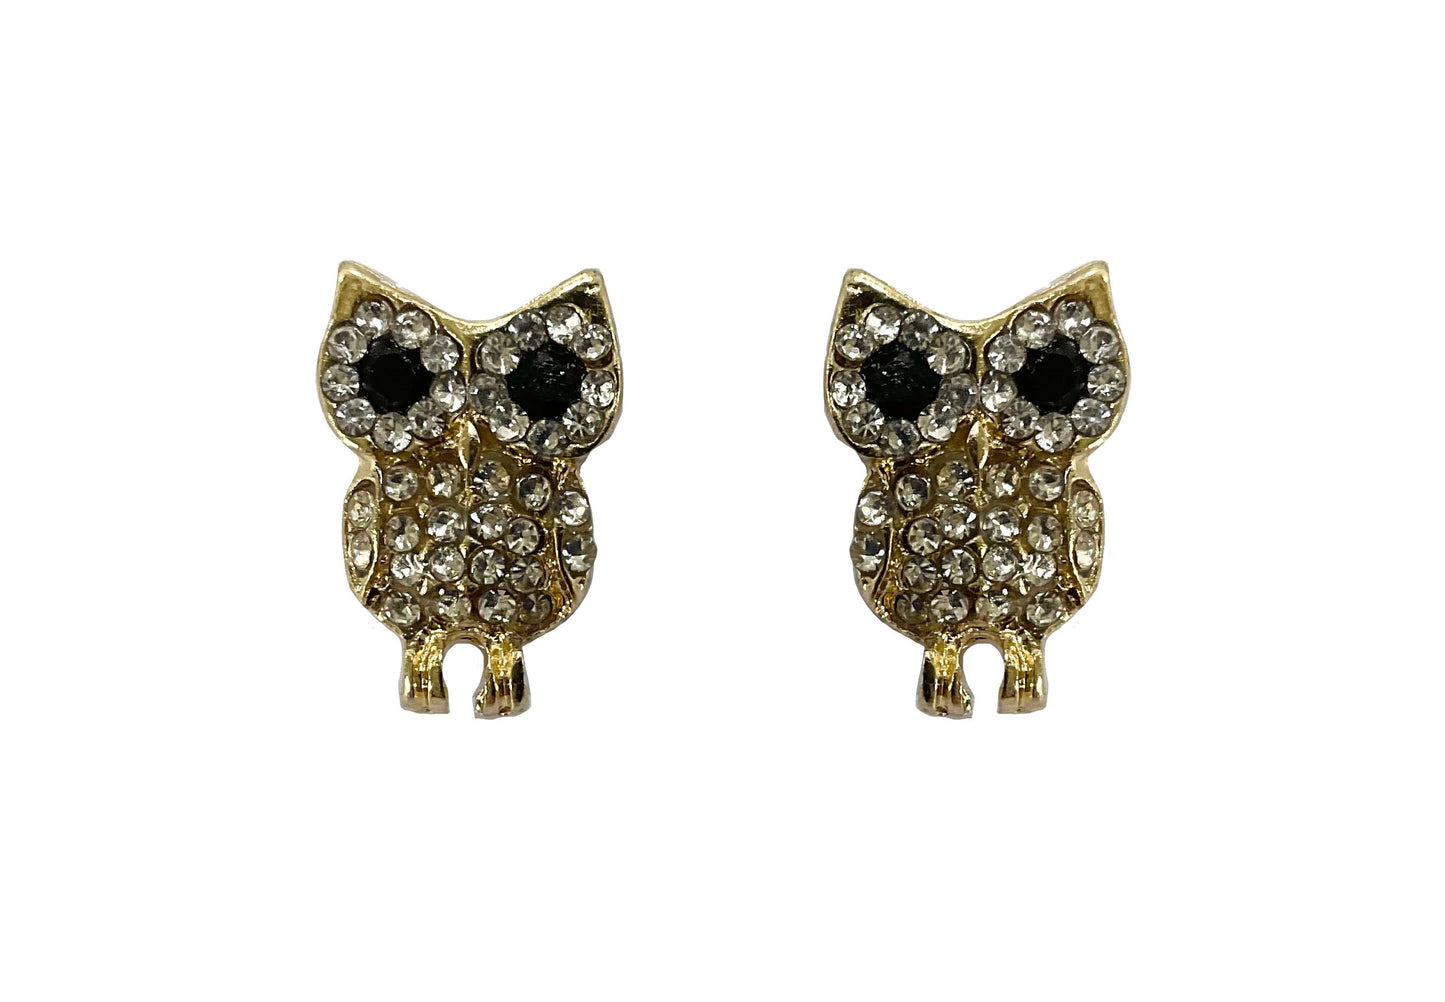 Owl Earring #11-1930121